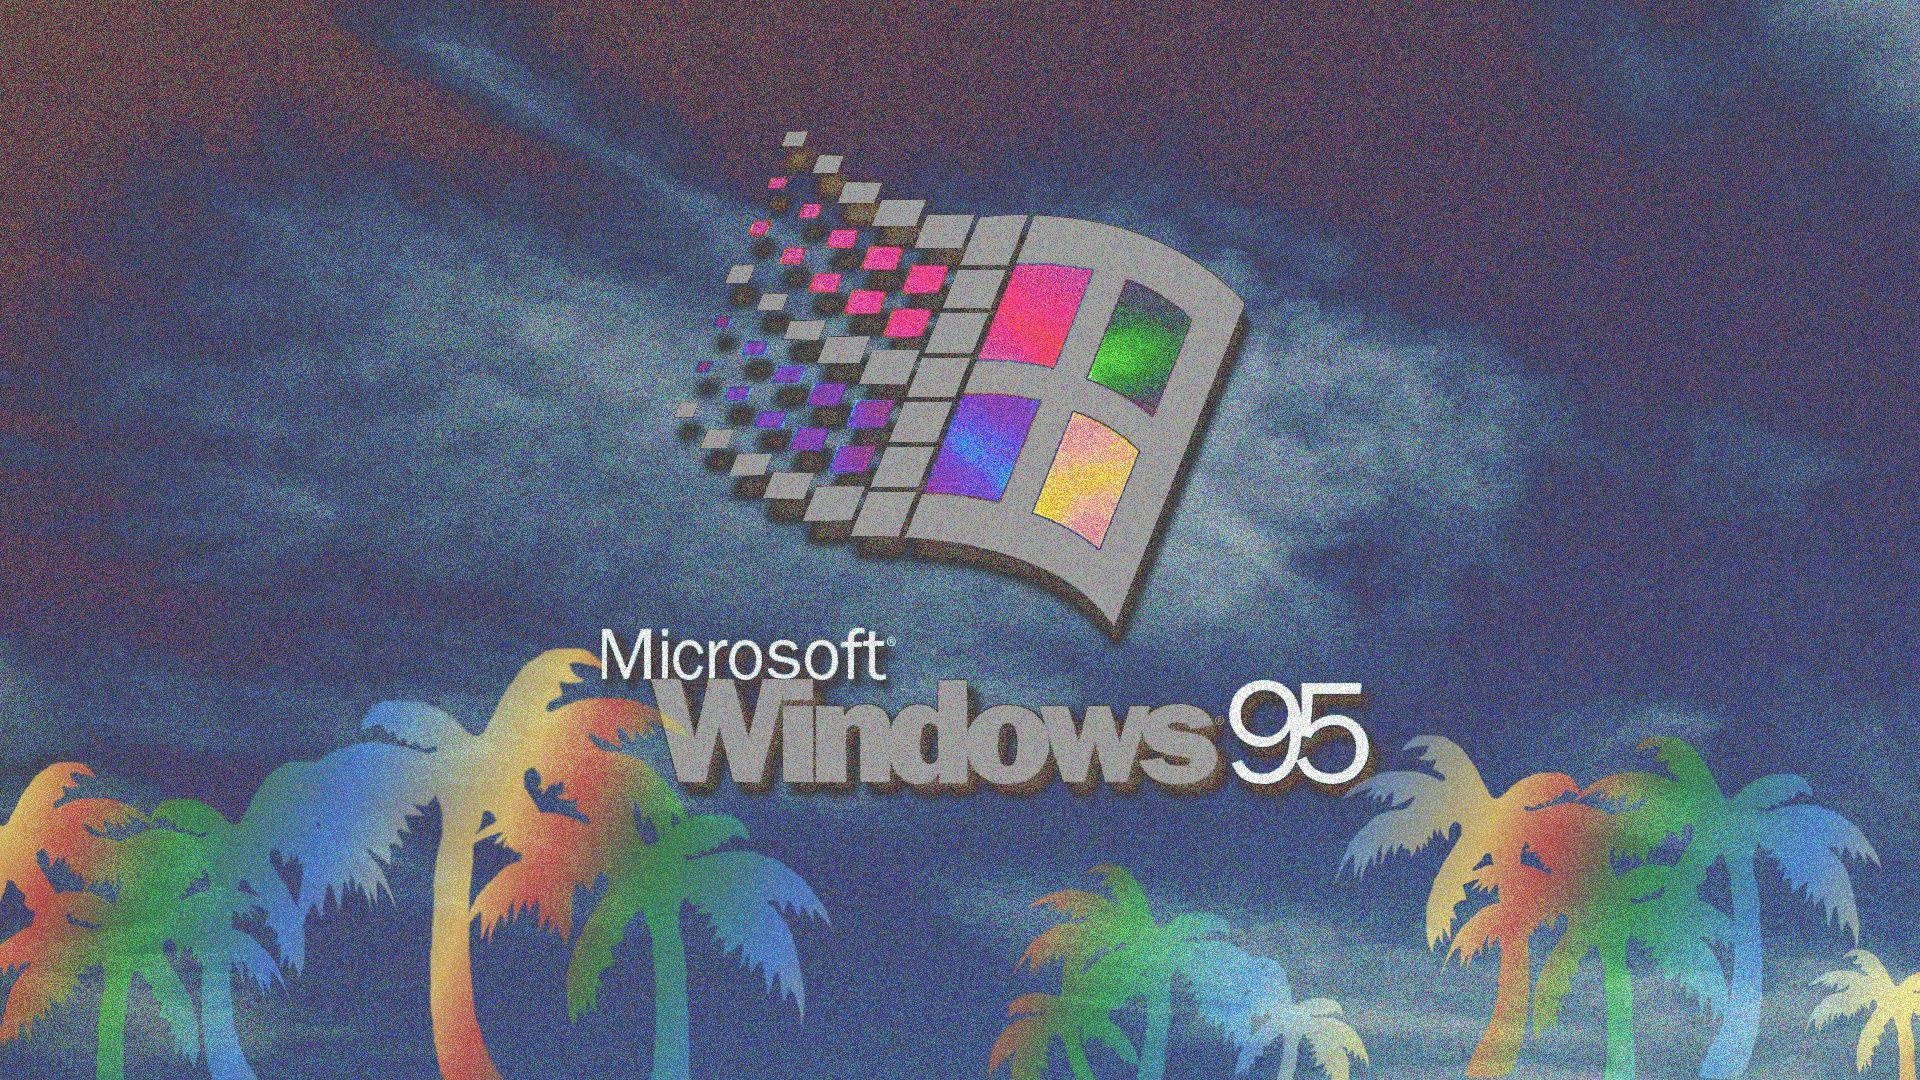 Utforskadet Förflutna Med Windows 98 Som Bakgrundsbild På Din Dator Eller Mobiltelefon. Wallpaper